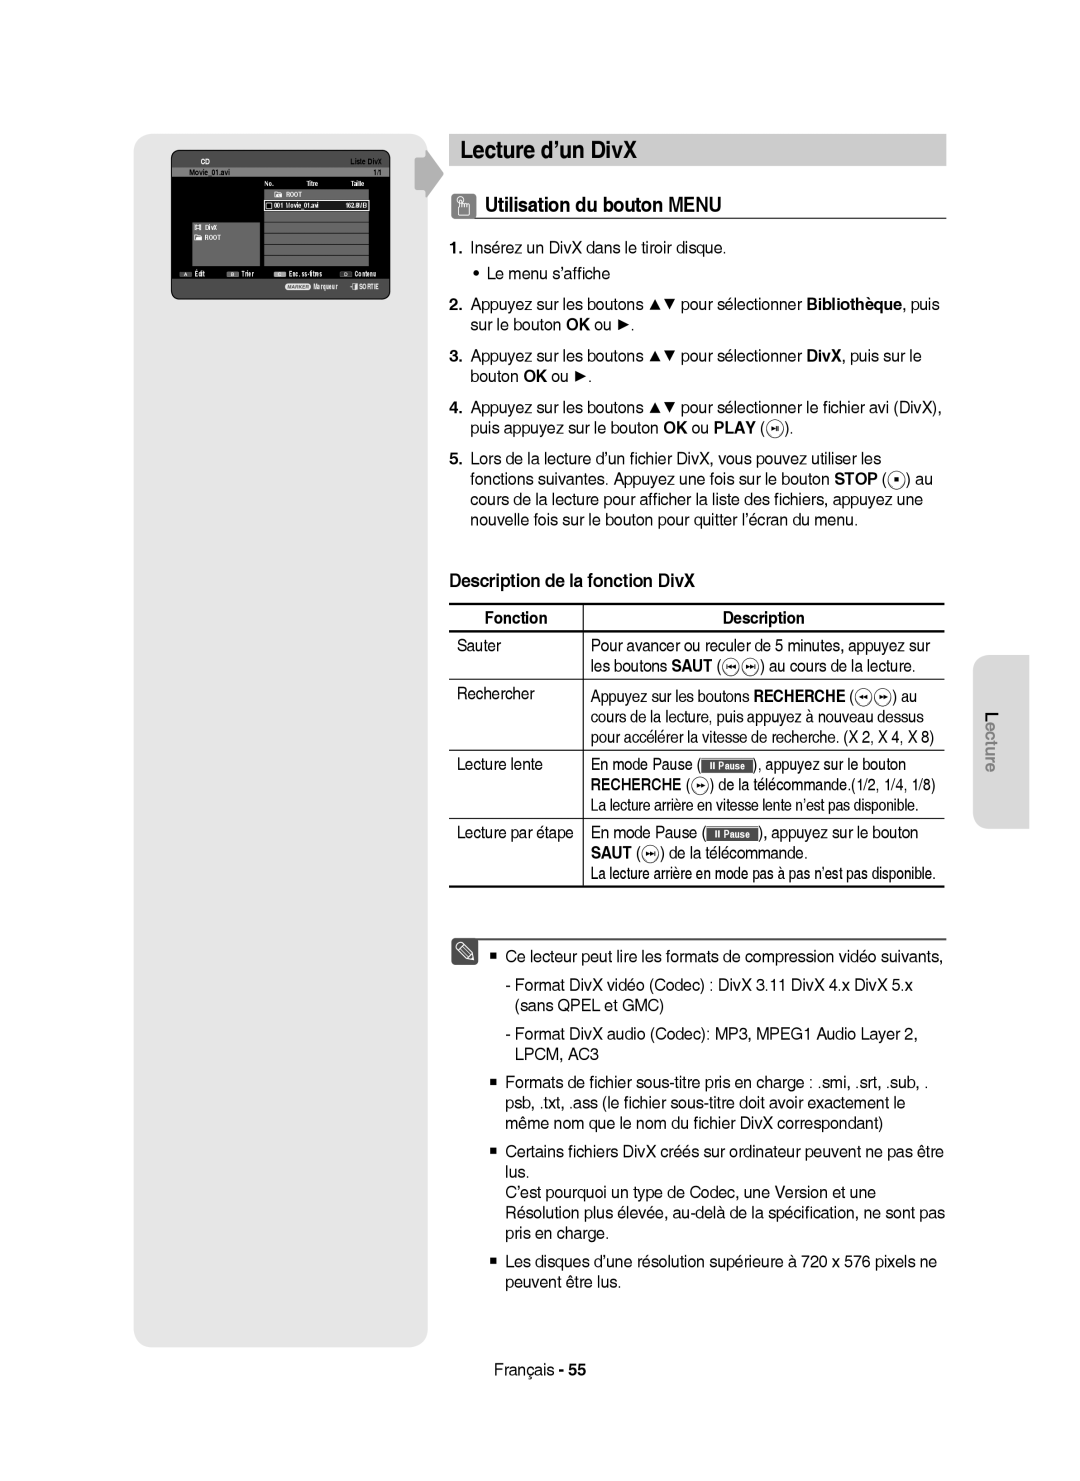 Samsung DVD-HR750/XEG Lecture d’un DivX, Utilisation du bouton Menu, Description de la fonction DivX, Fonction Description 